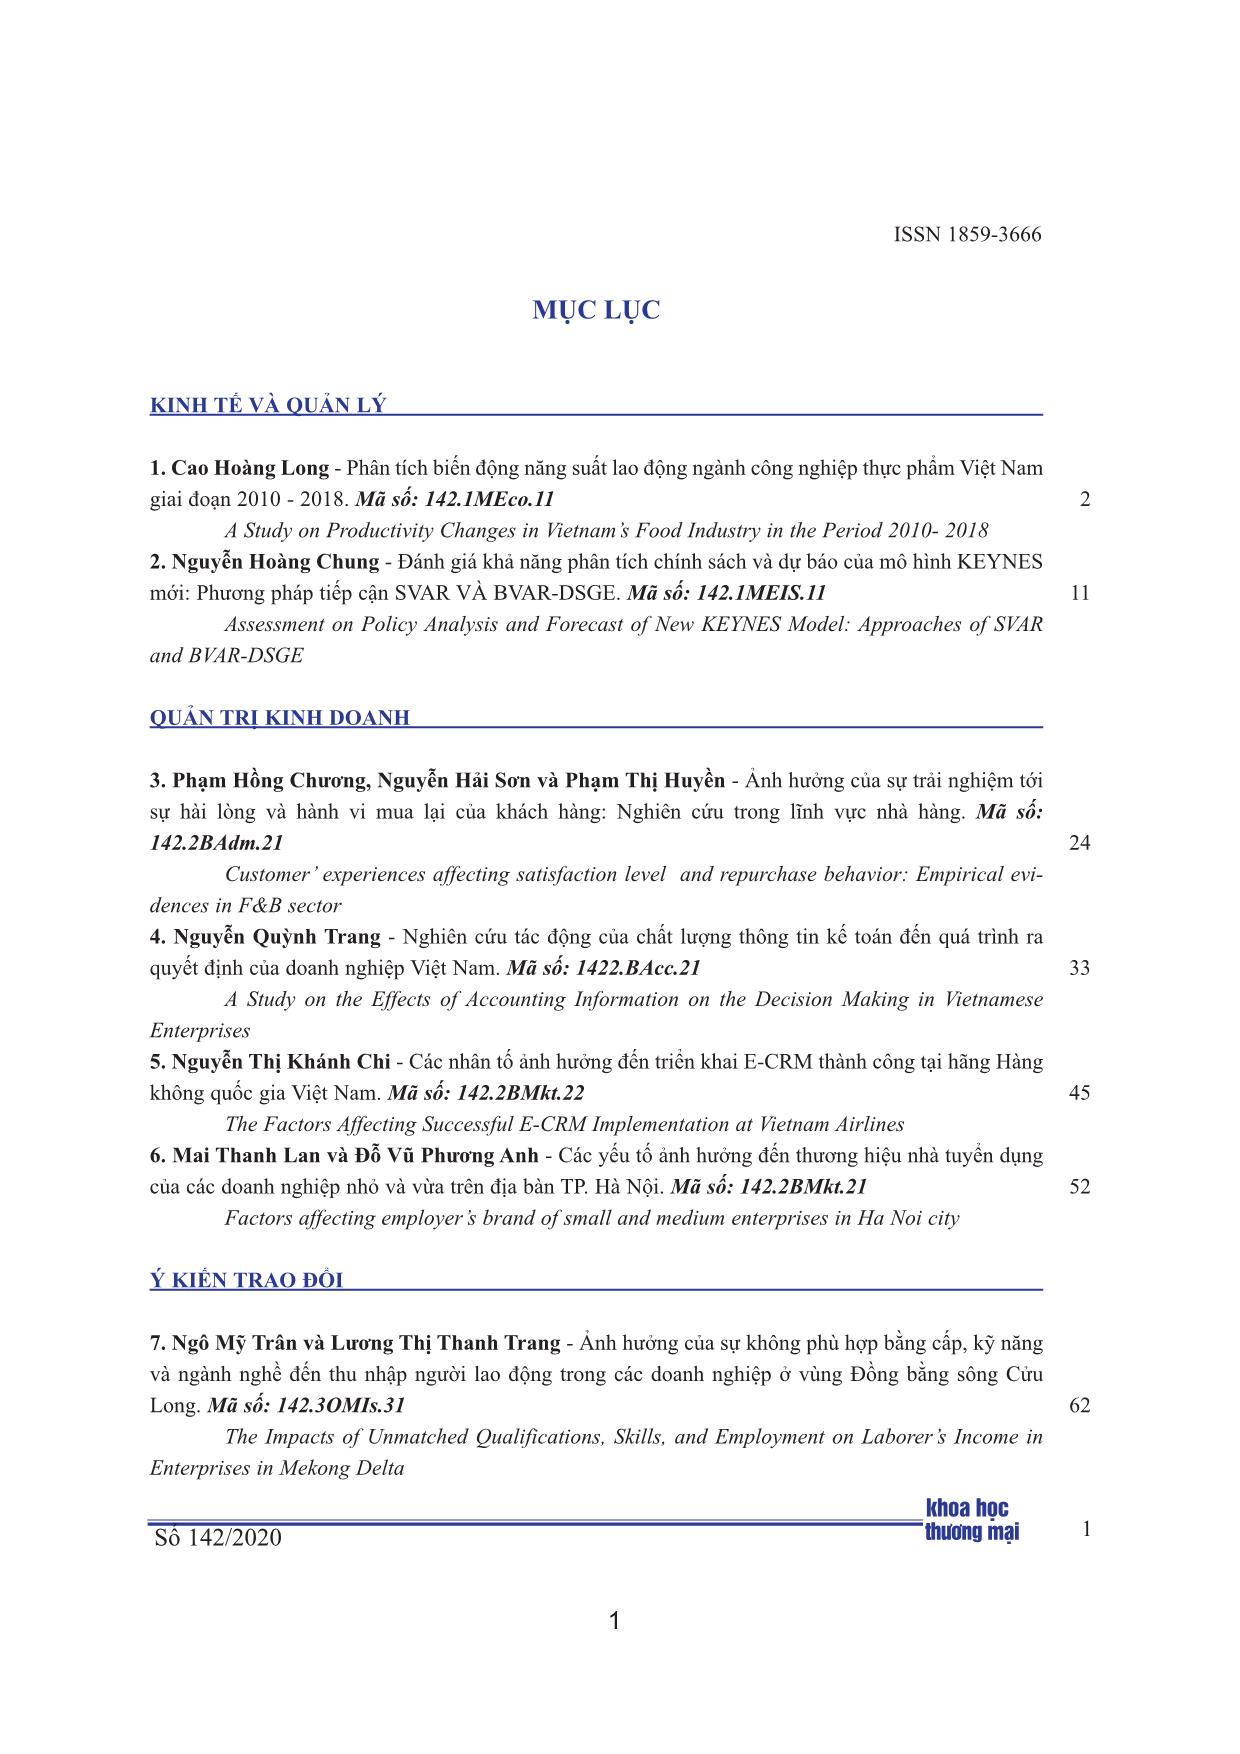 Đánh giá khả năng phân tích chính sách và dự báo của mô hình keynes mới: Phương pháp tiếp cận Svar và Bvar-Dsge trang 1